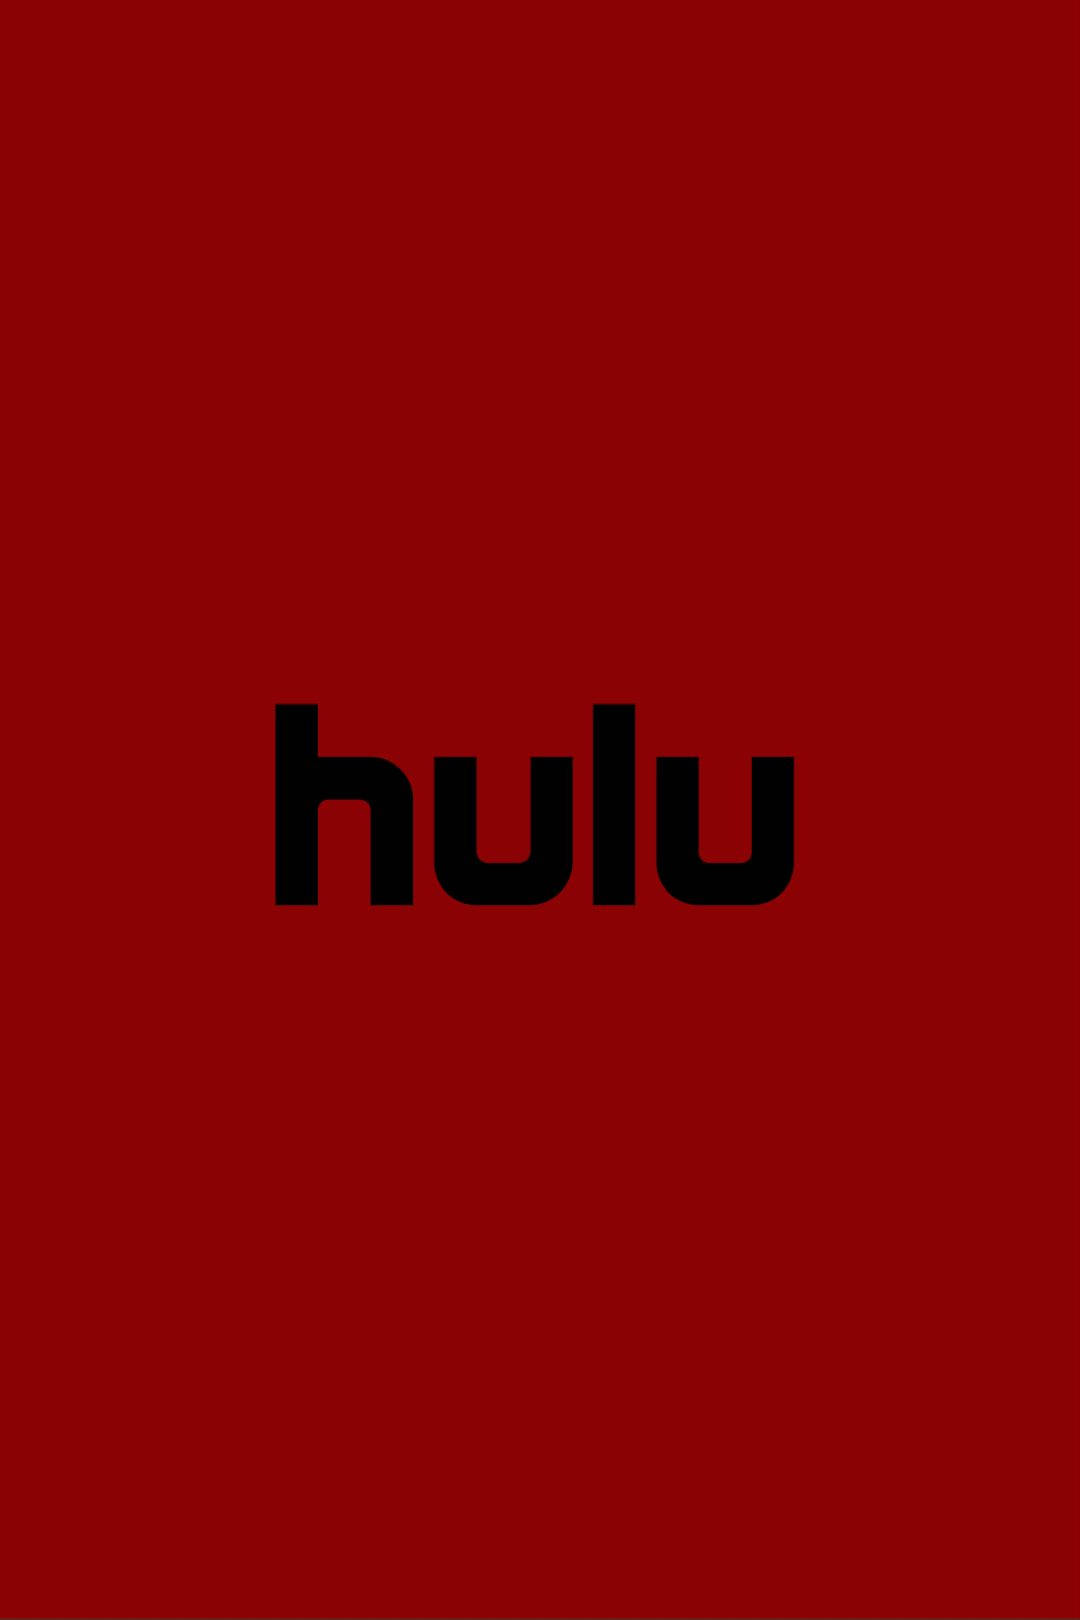 Hulu In Red Background